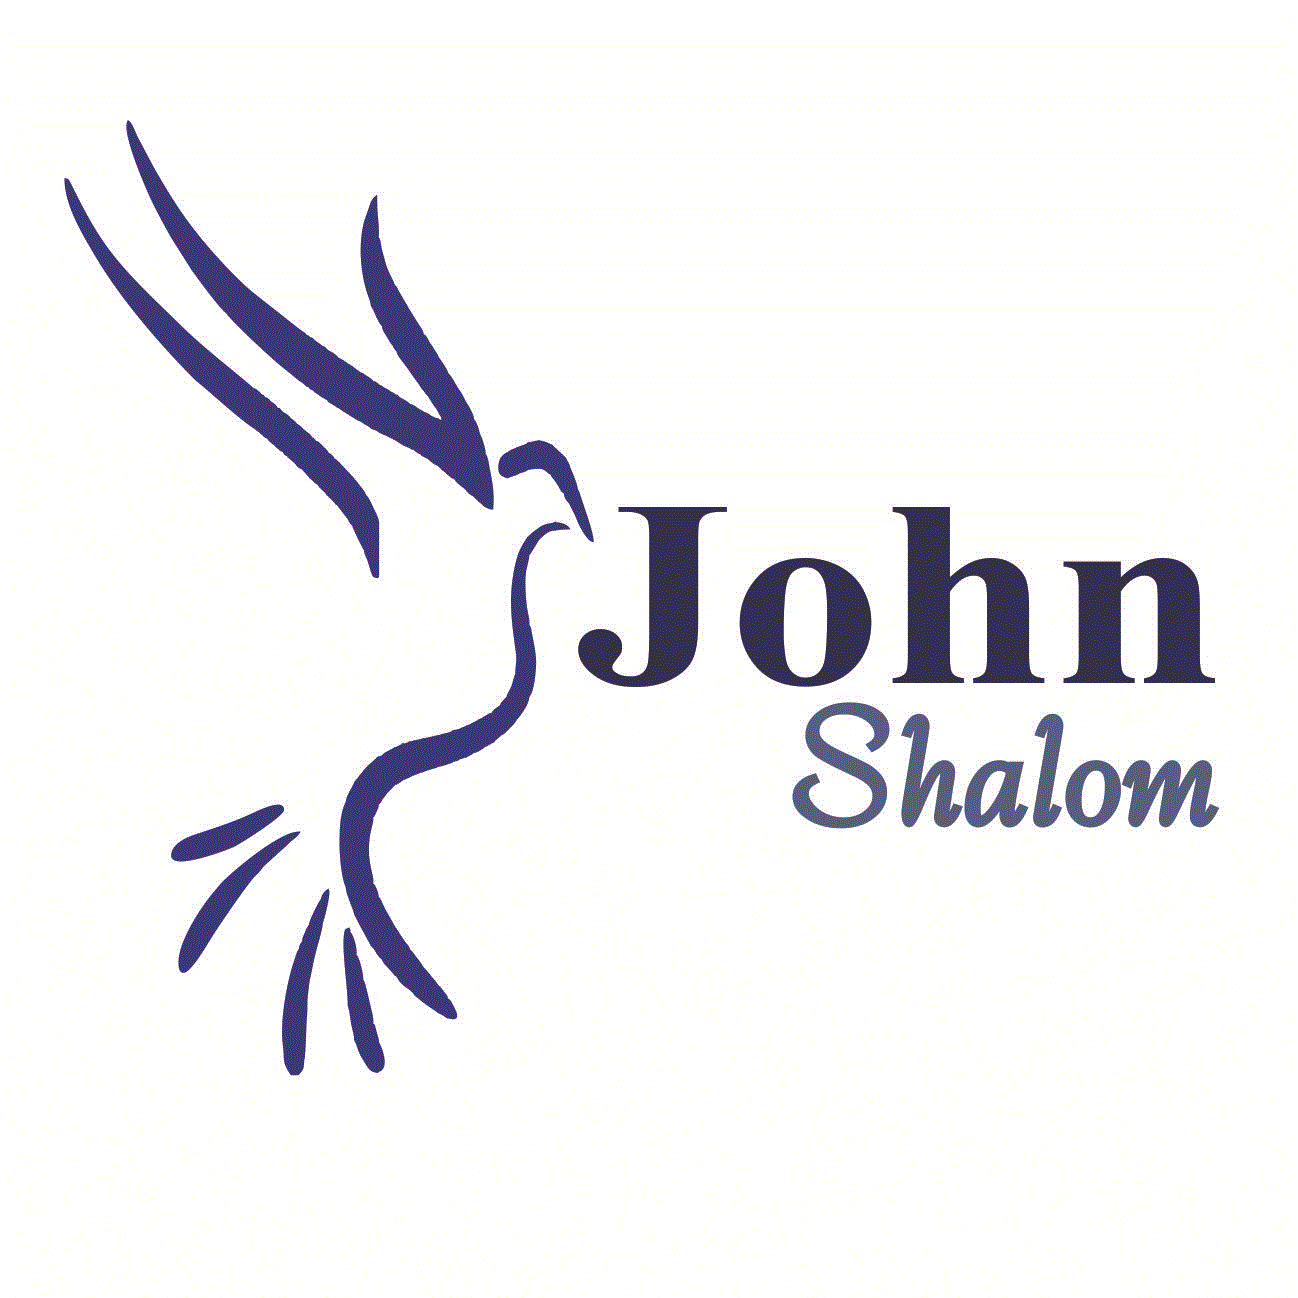 Shalom Logo - John Shalom Walkthroughs with Tips and Tricks (5 steps) | John Shalom